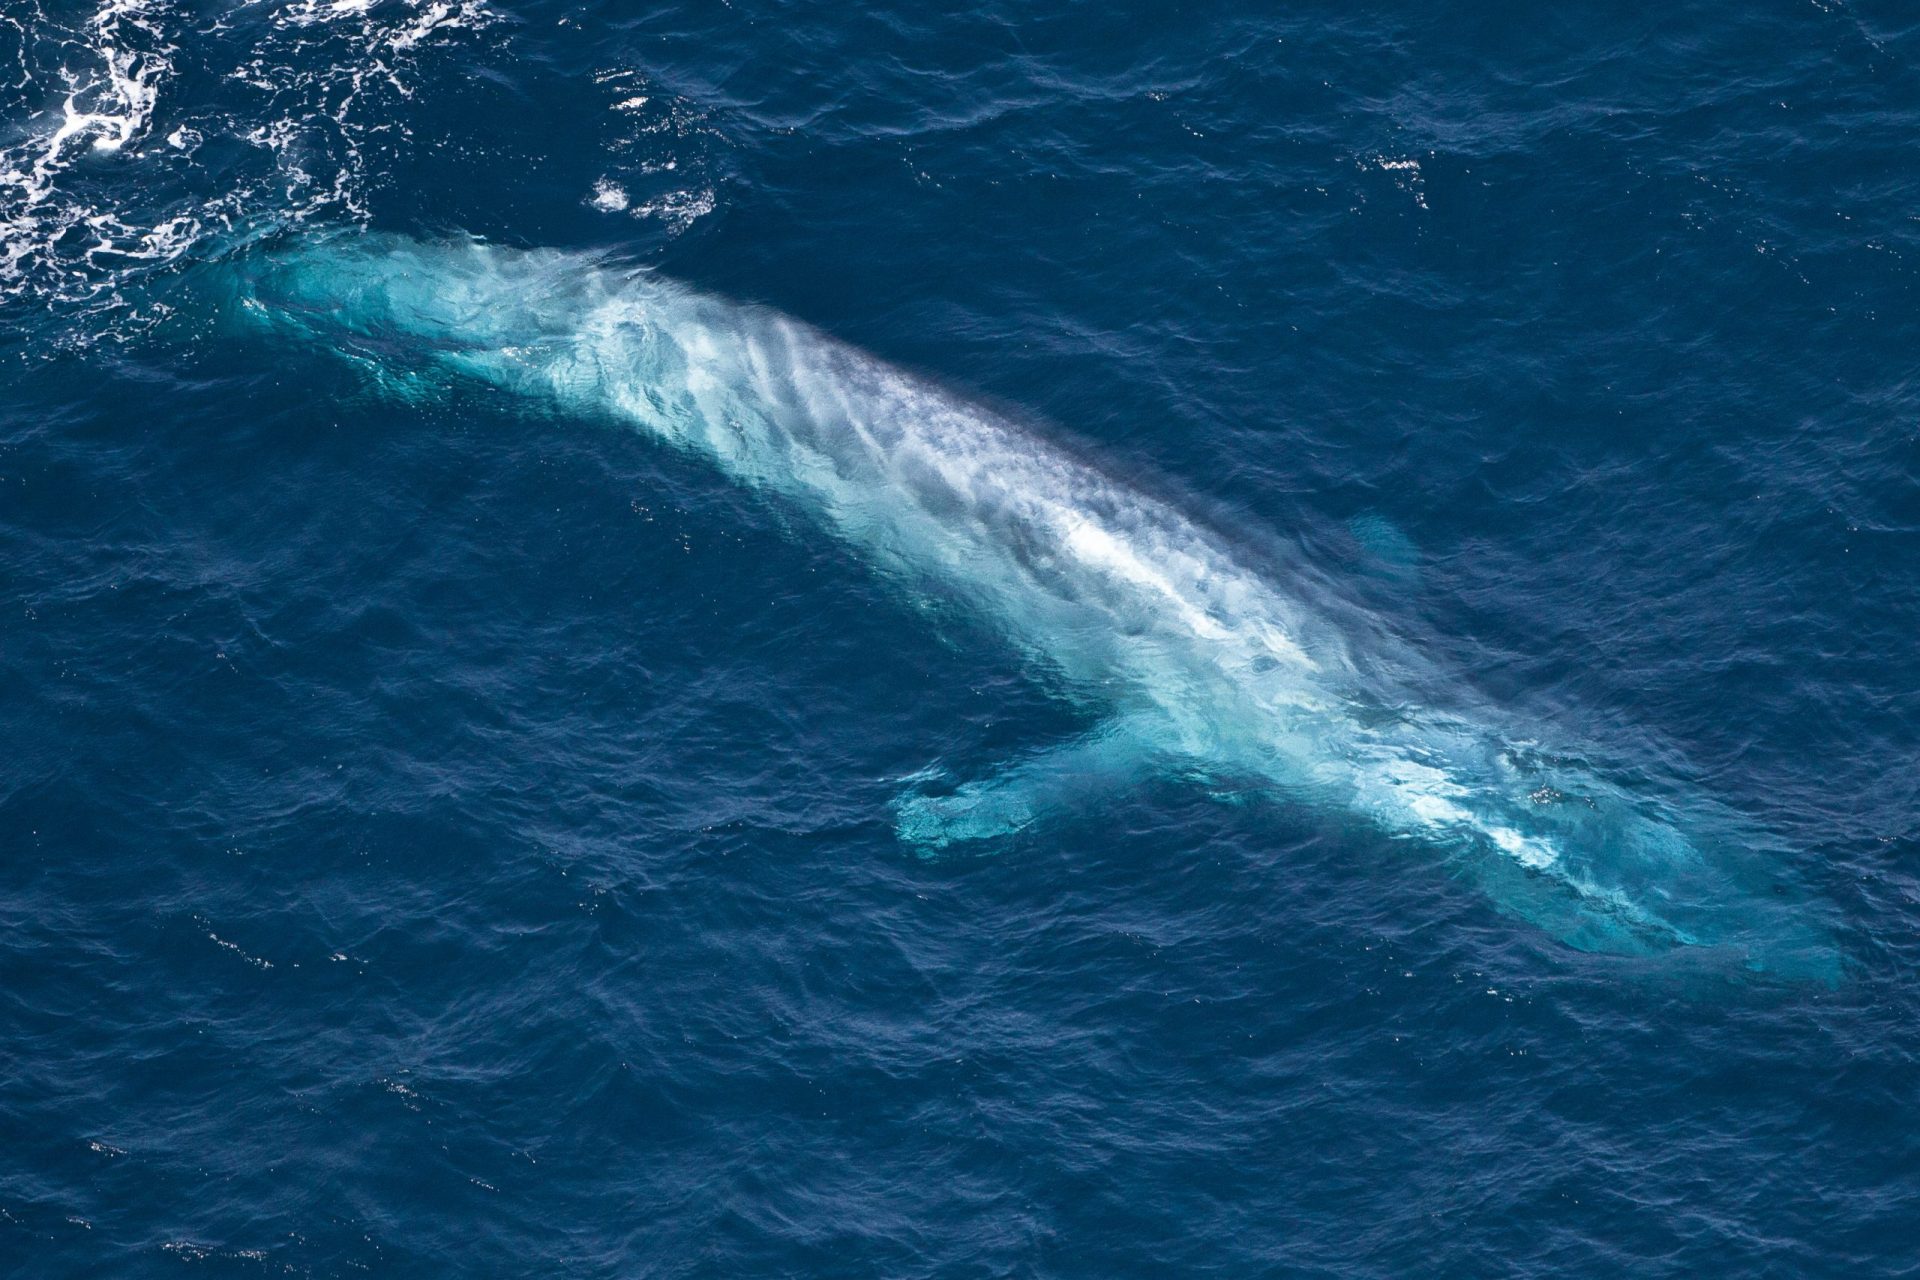 Em busca da baleia desaparecida